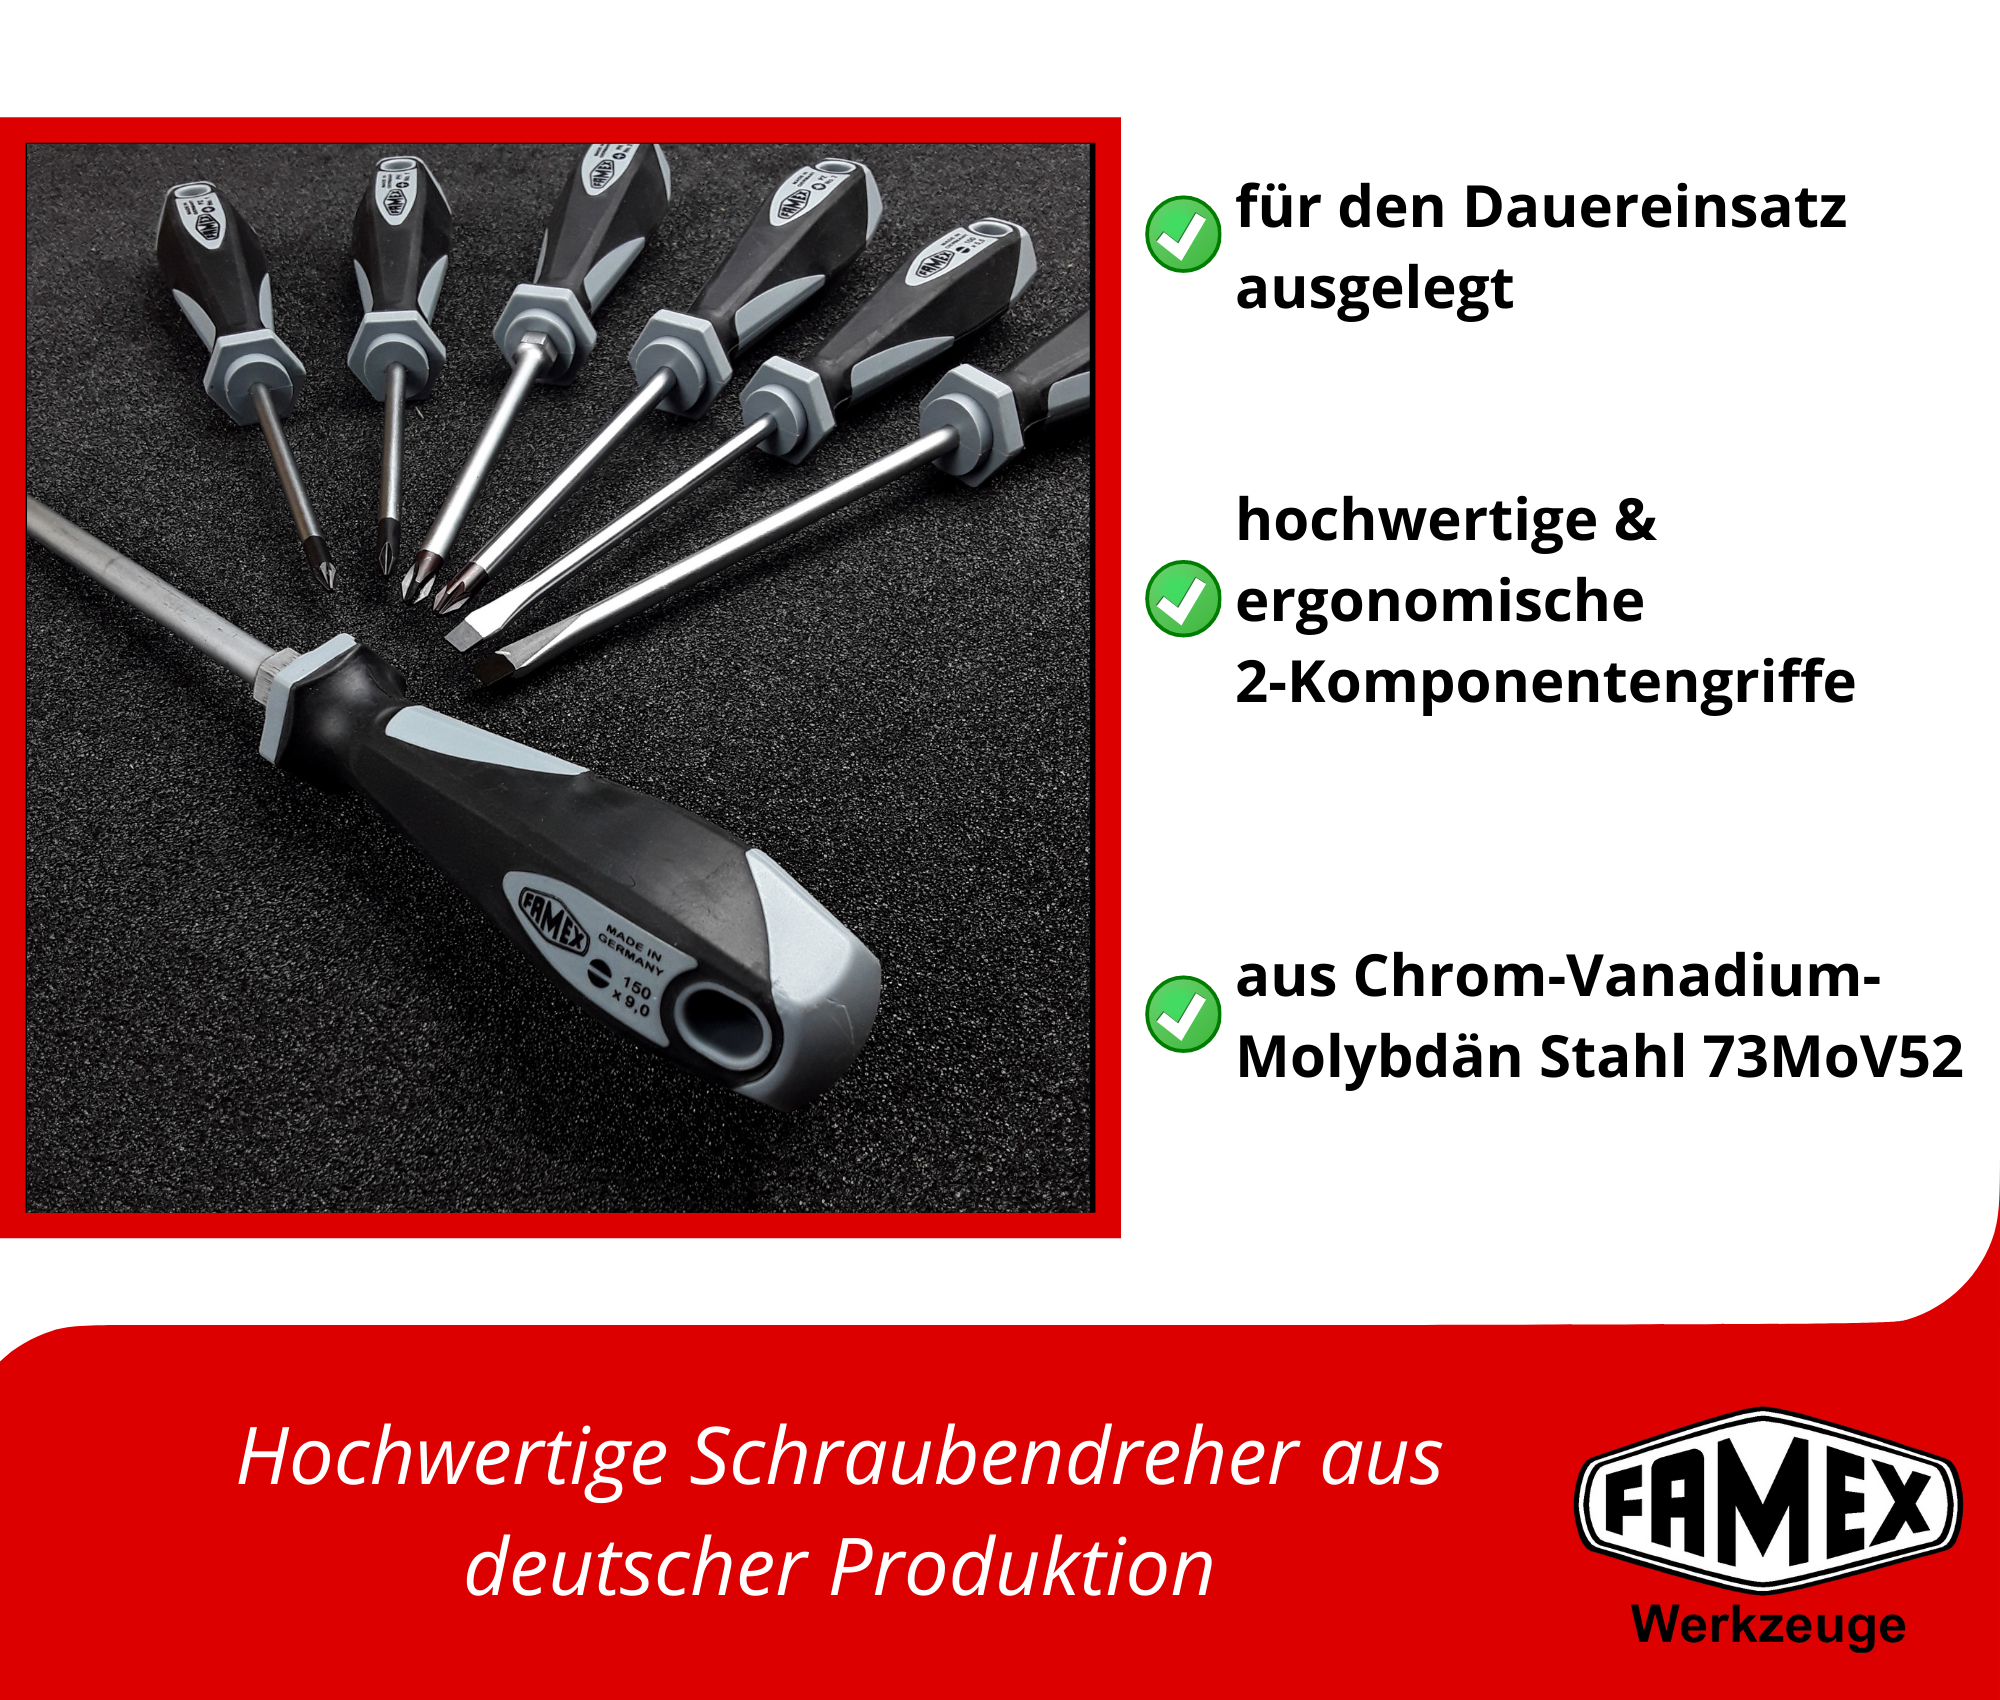 Profi Werkzeuge online Steckschlüsselsatz FAMEX Top 420-18 Alu Werkzeugkoffer und Set - Werkzeug günstig kaufen mit